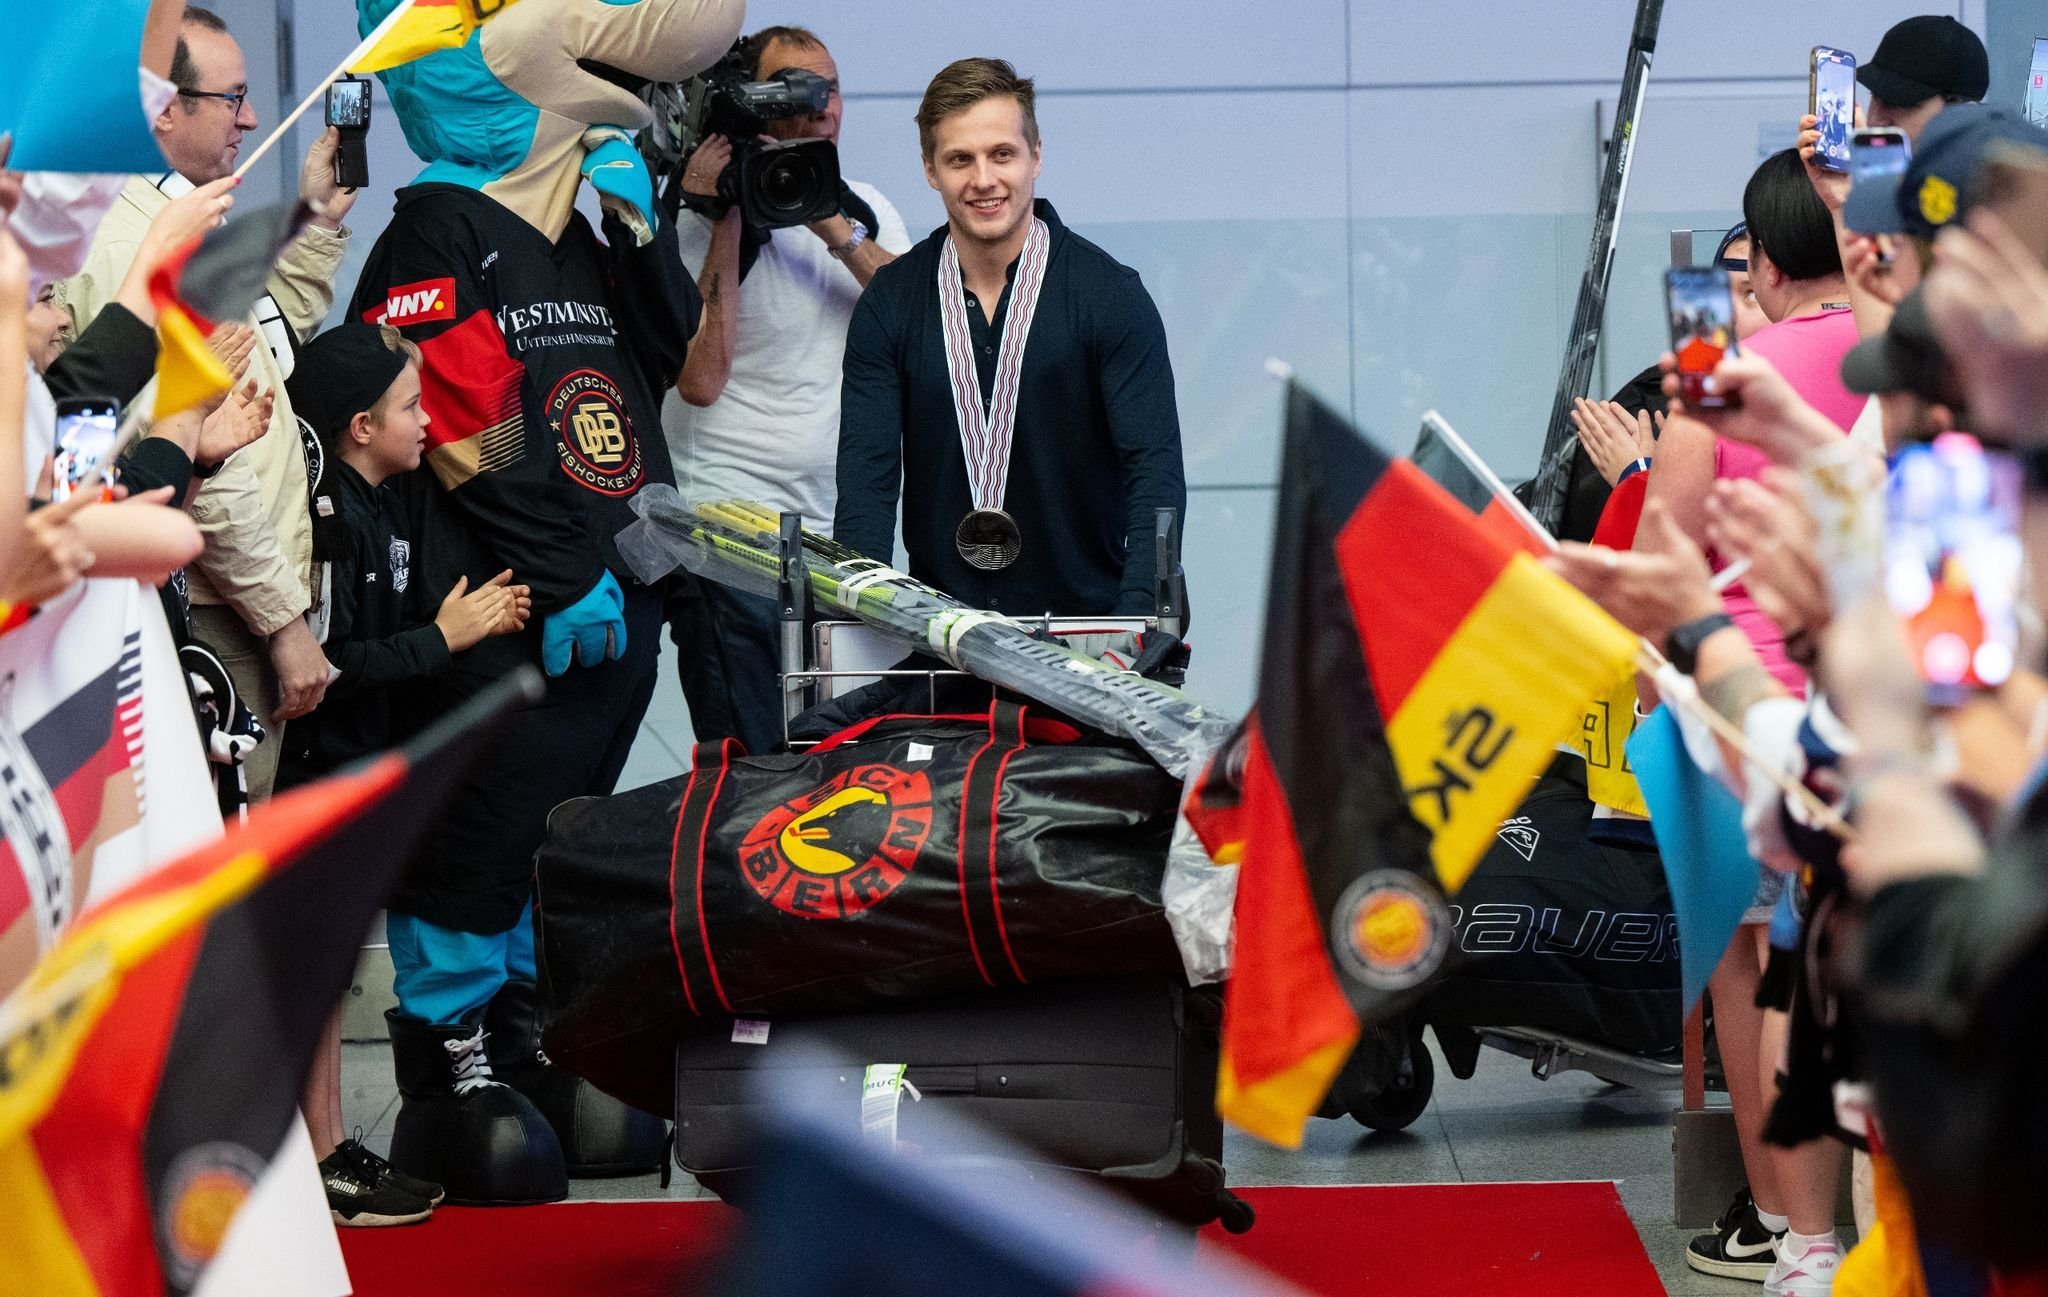 Vize–Weltmeister begeistert in Deutschland empfangen